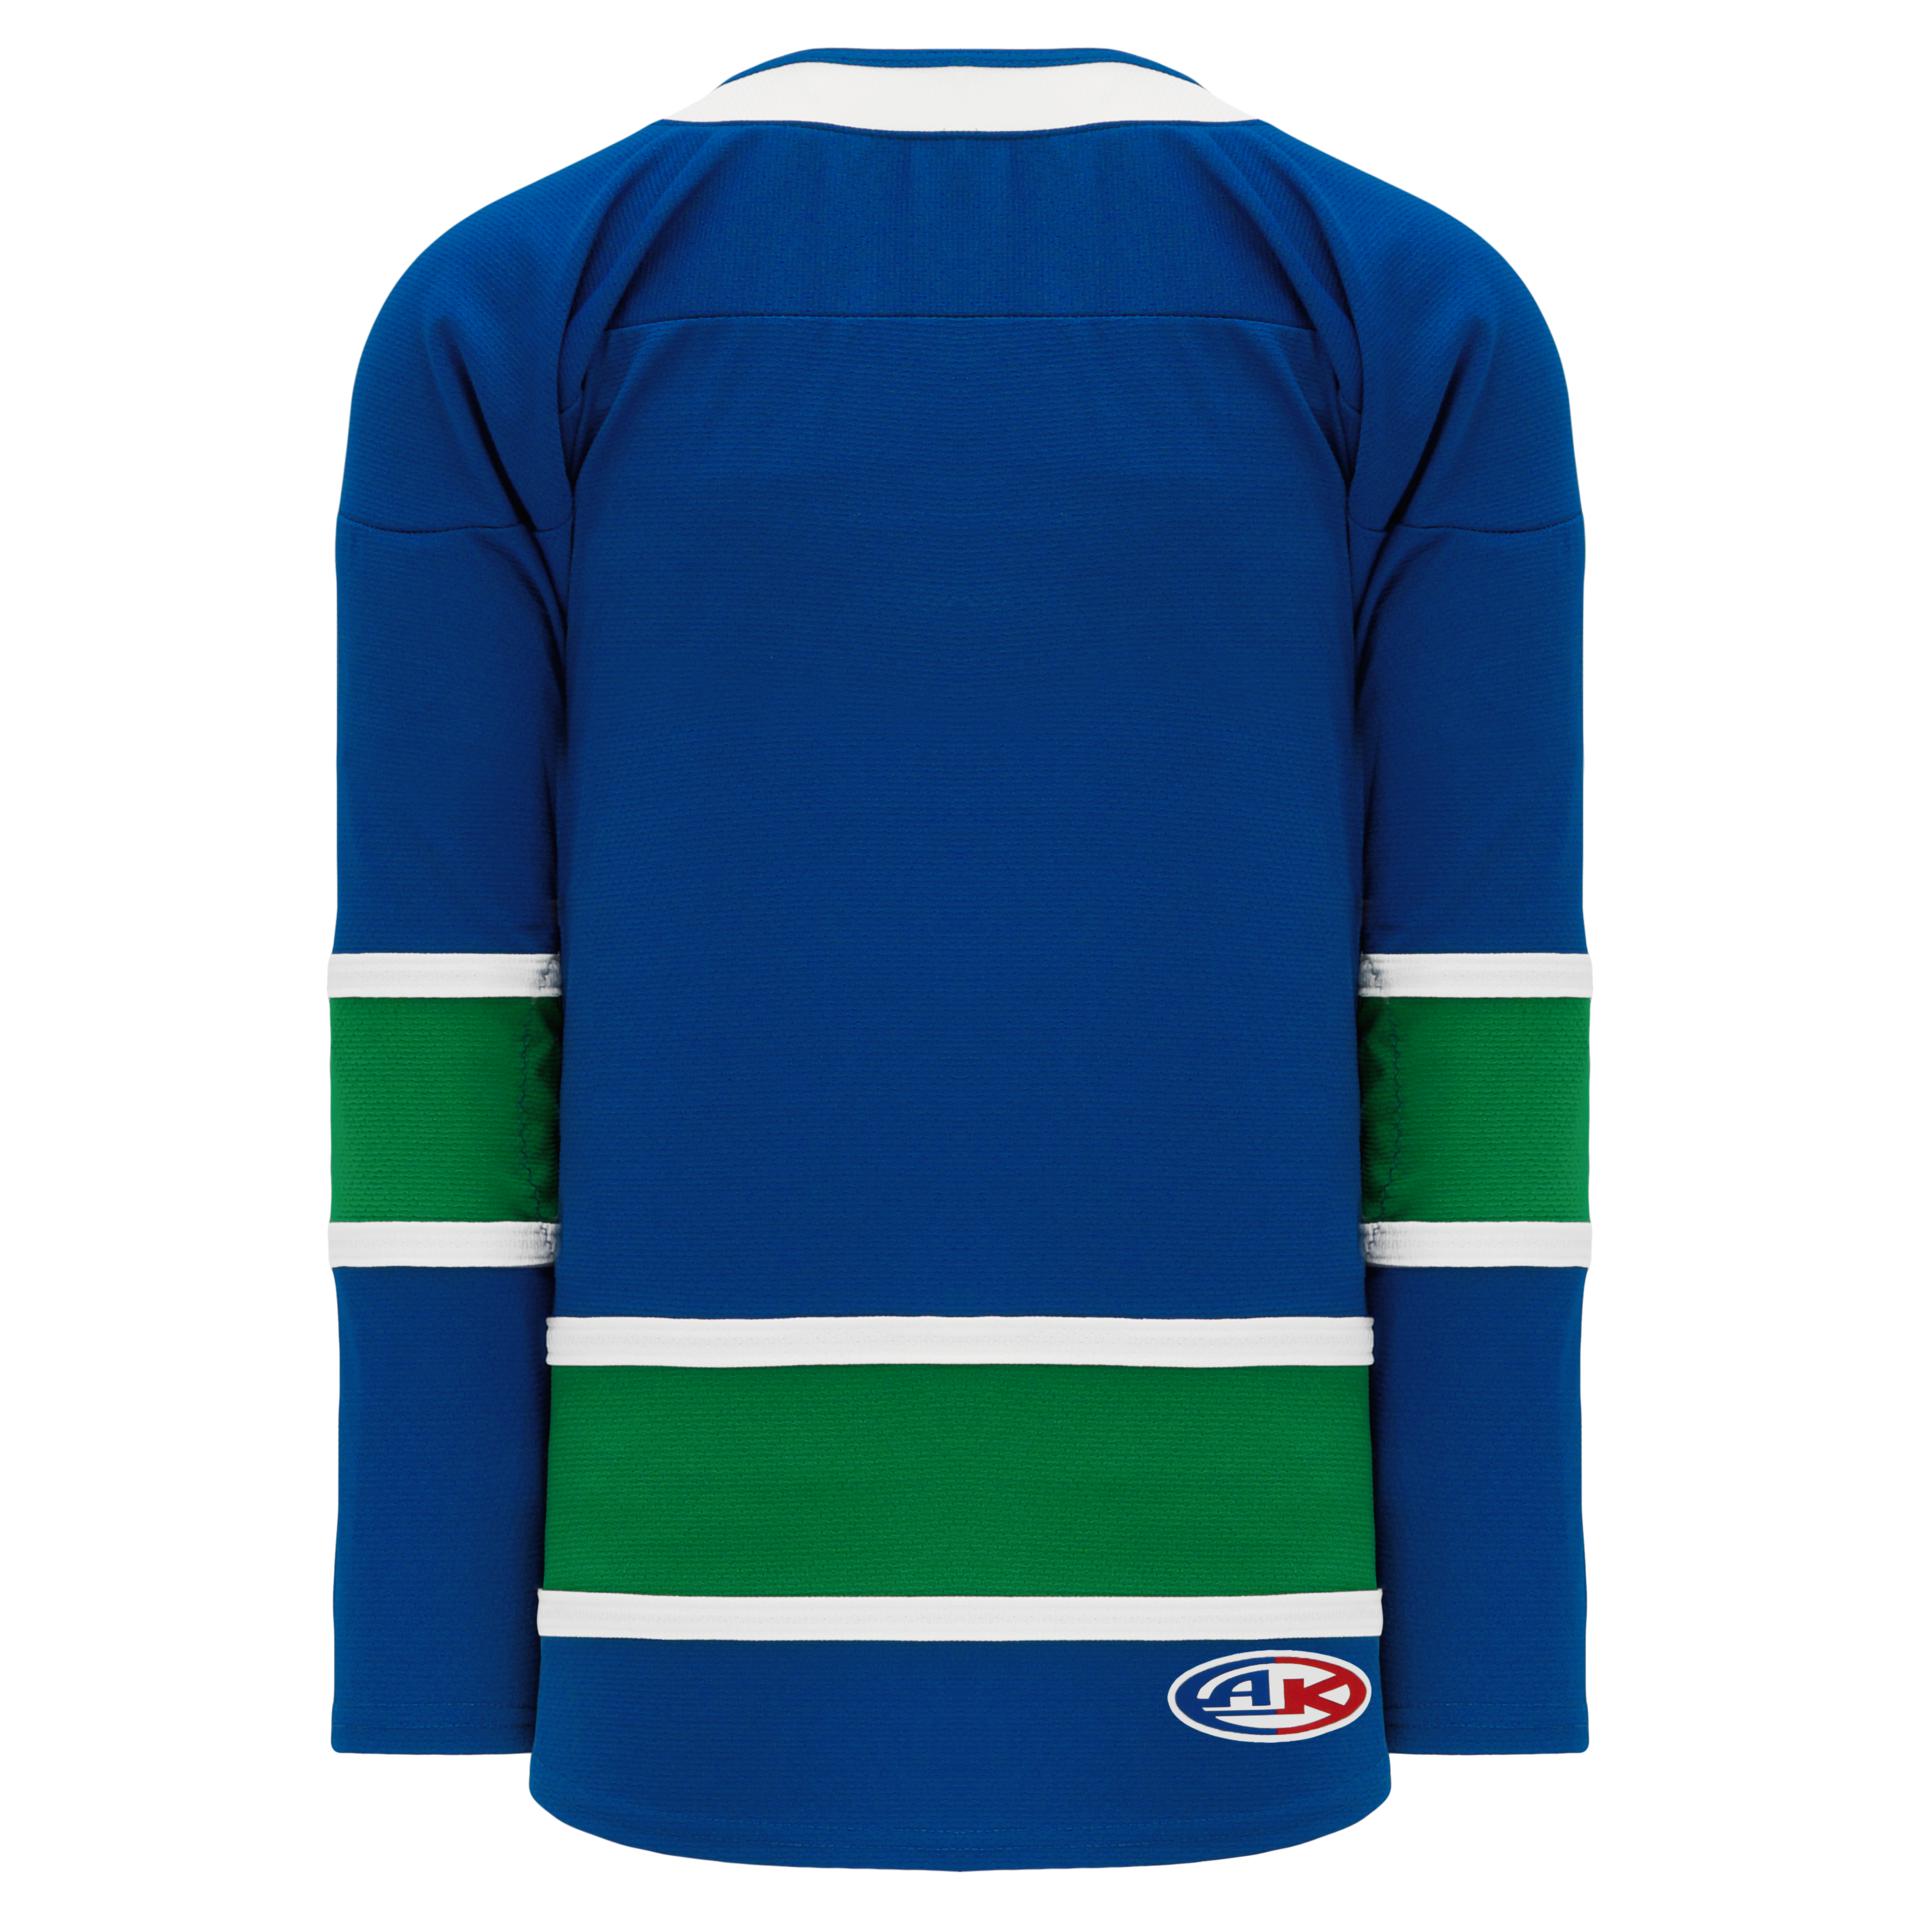 Blank Vintage Vancouver Canucks Hockey Jerseys